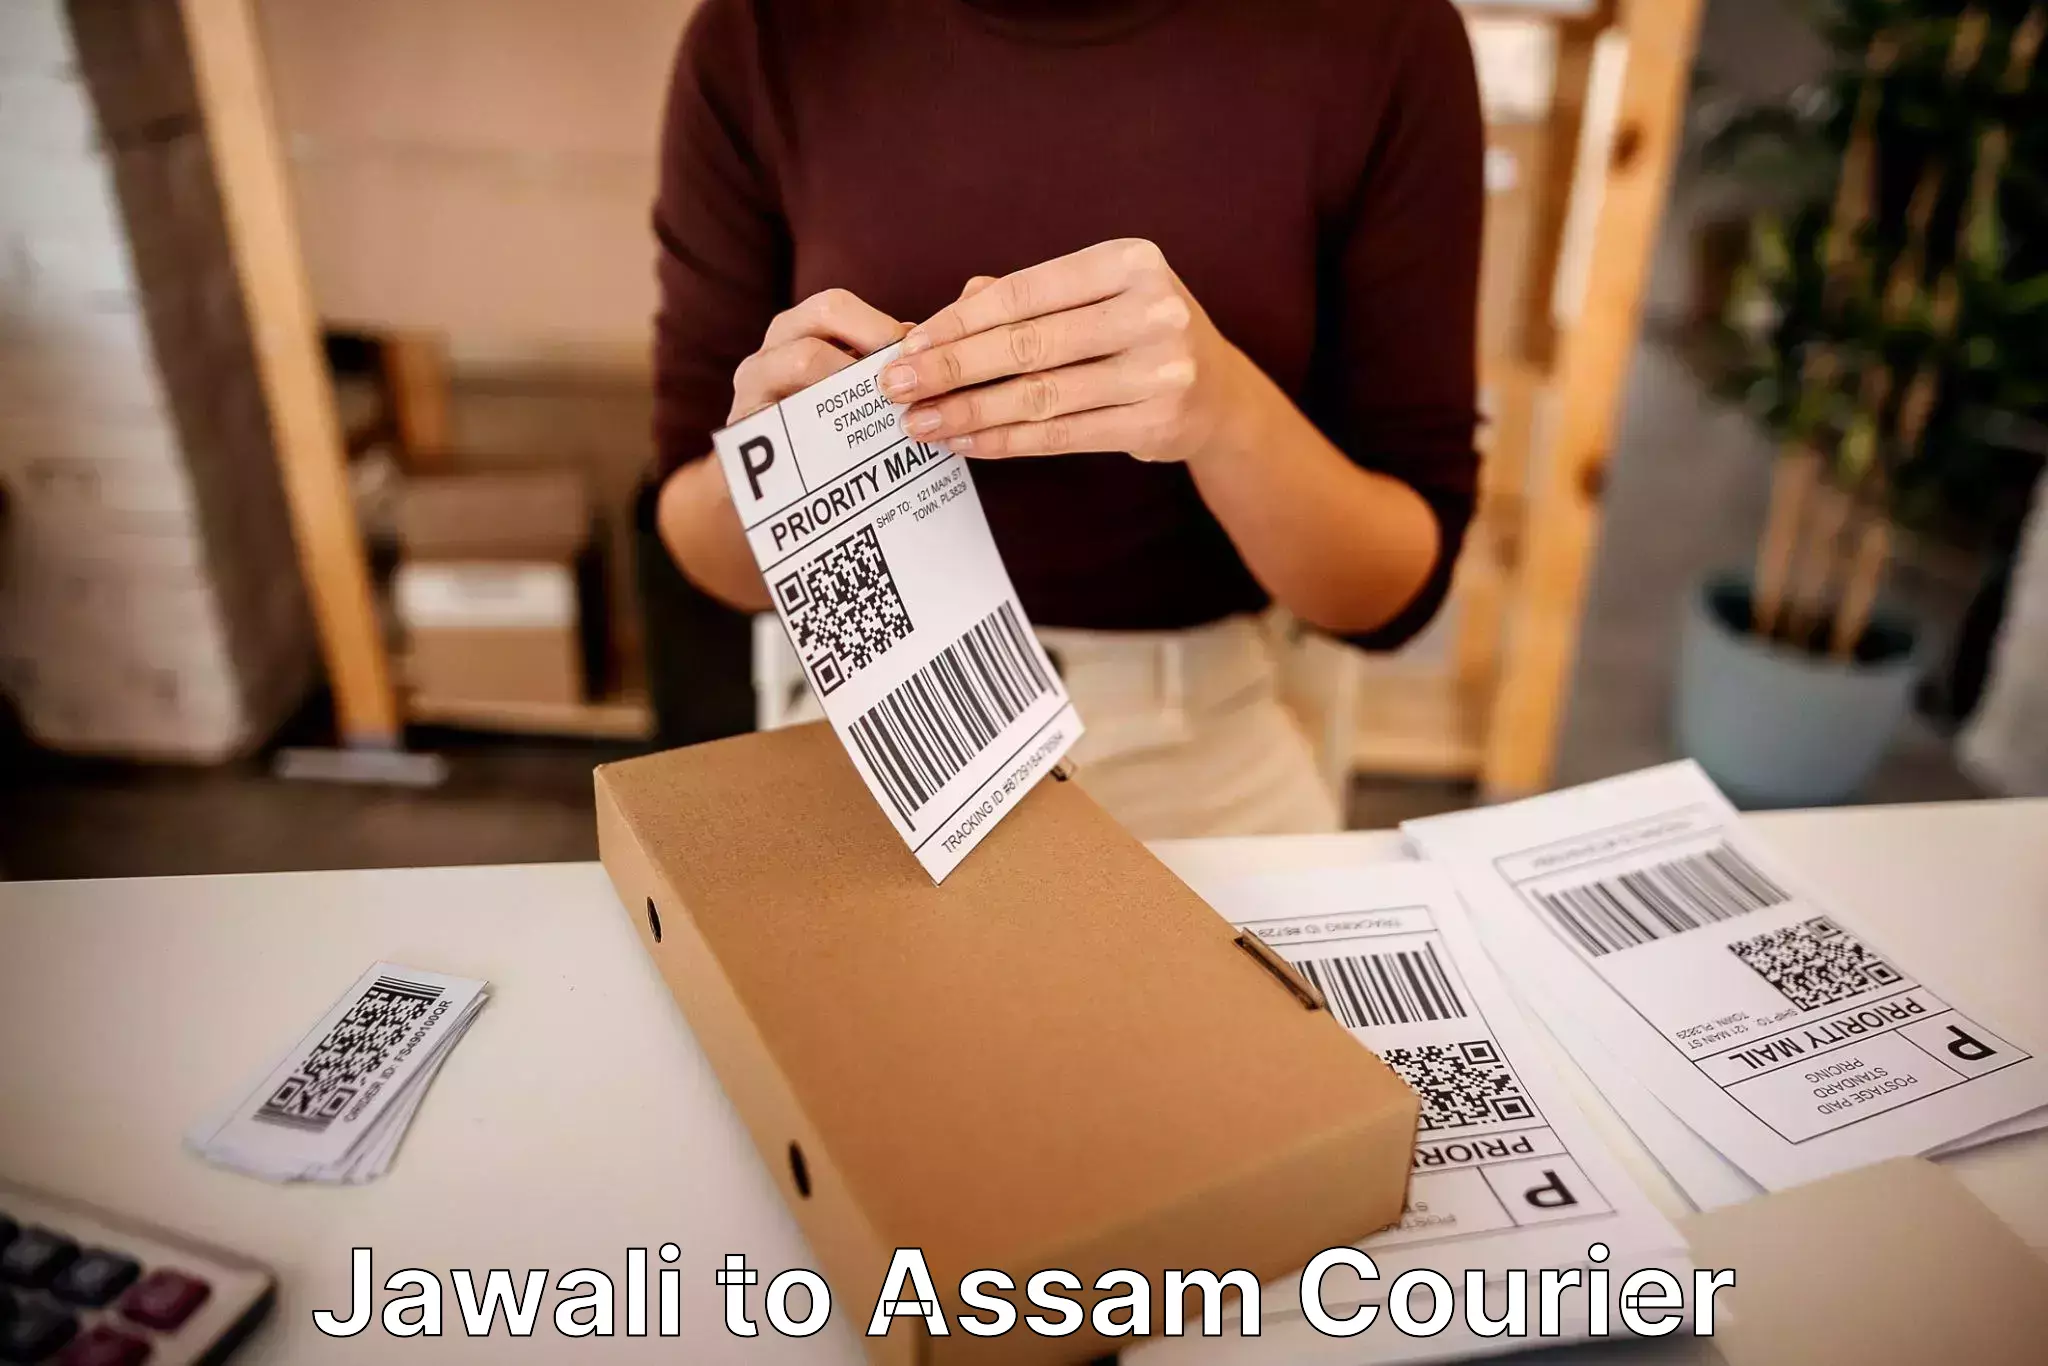 Professional packing services Jawali to Bamunimaidan